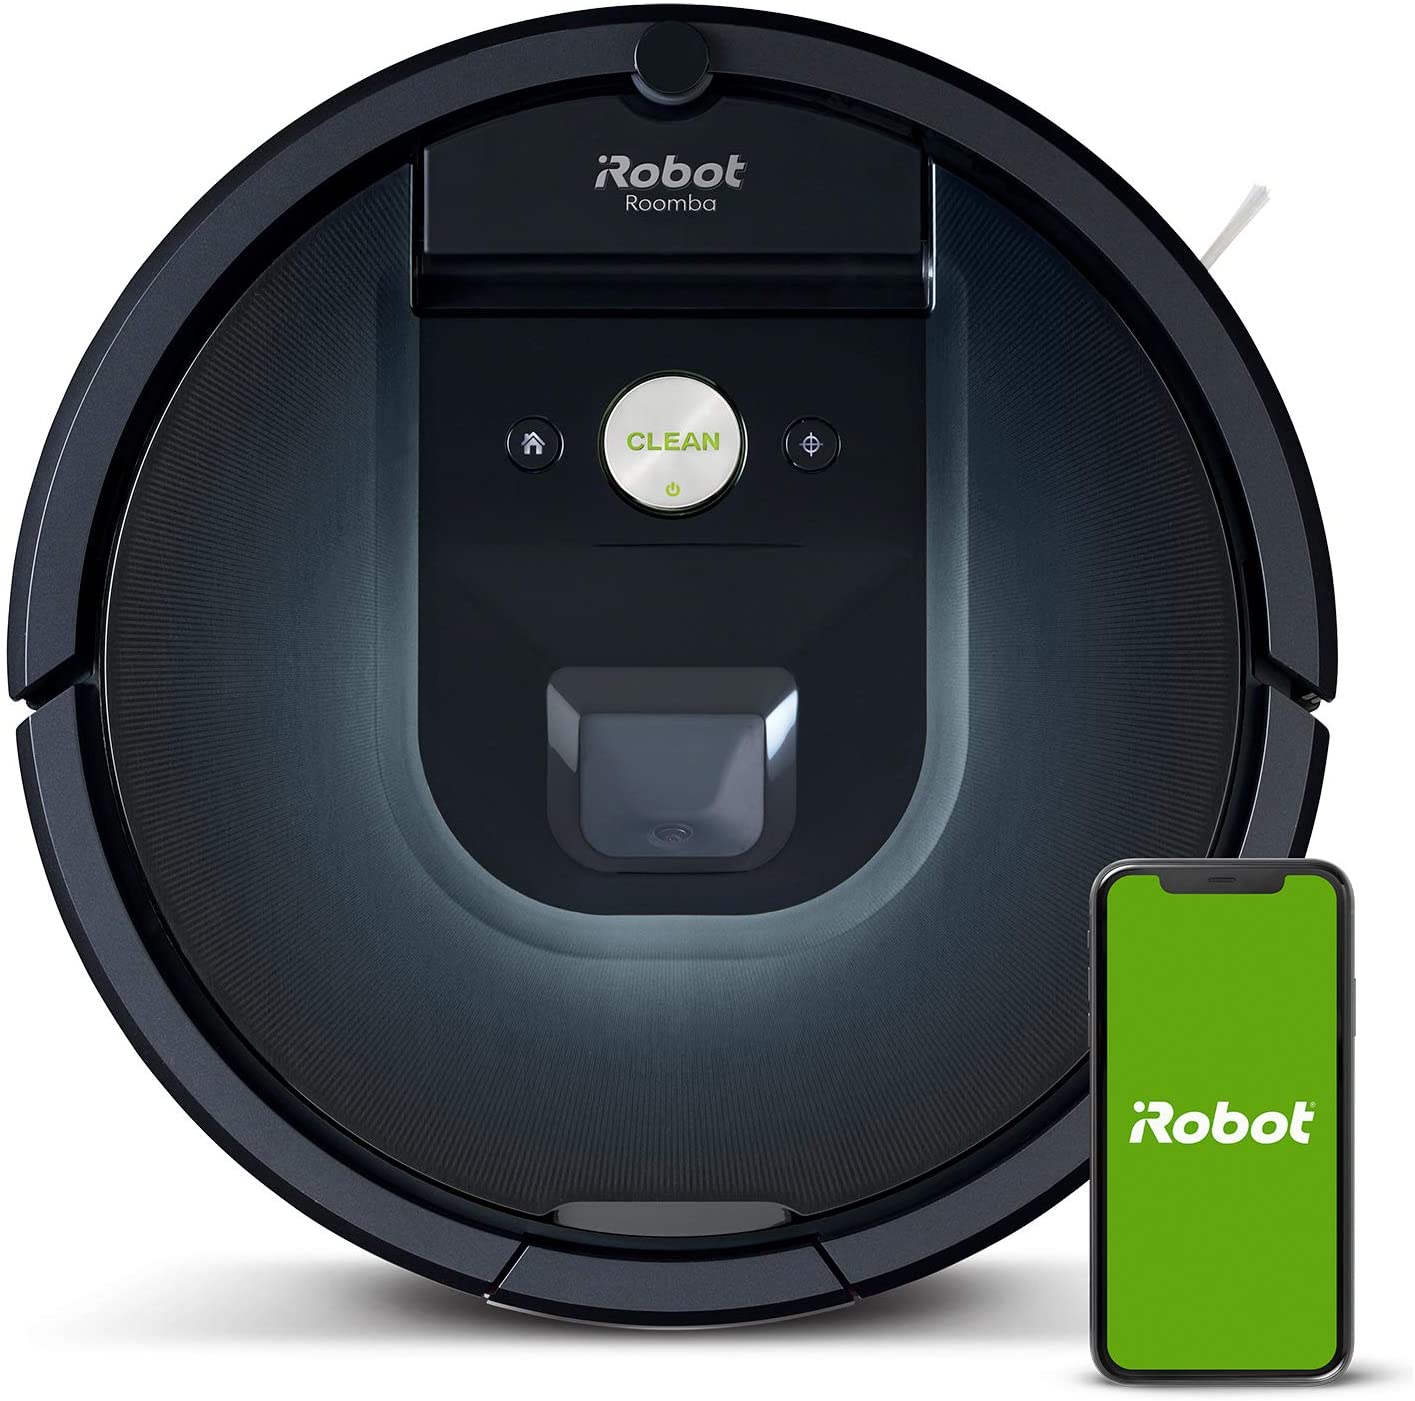 Roomba 981 vs Roomba i7 (i7+)